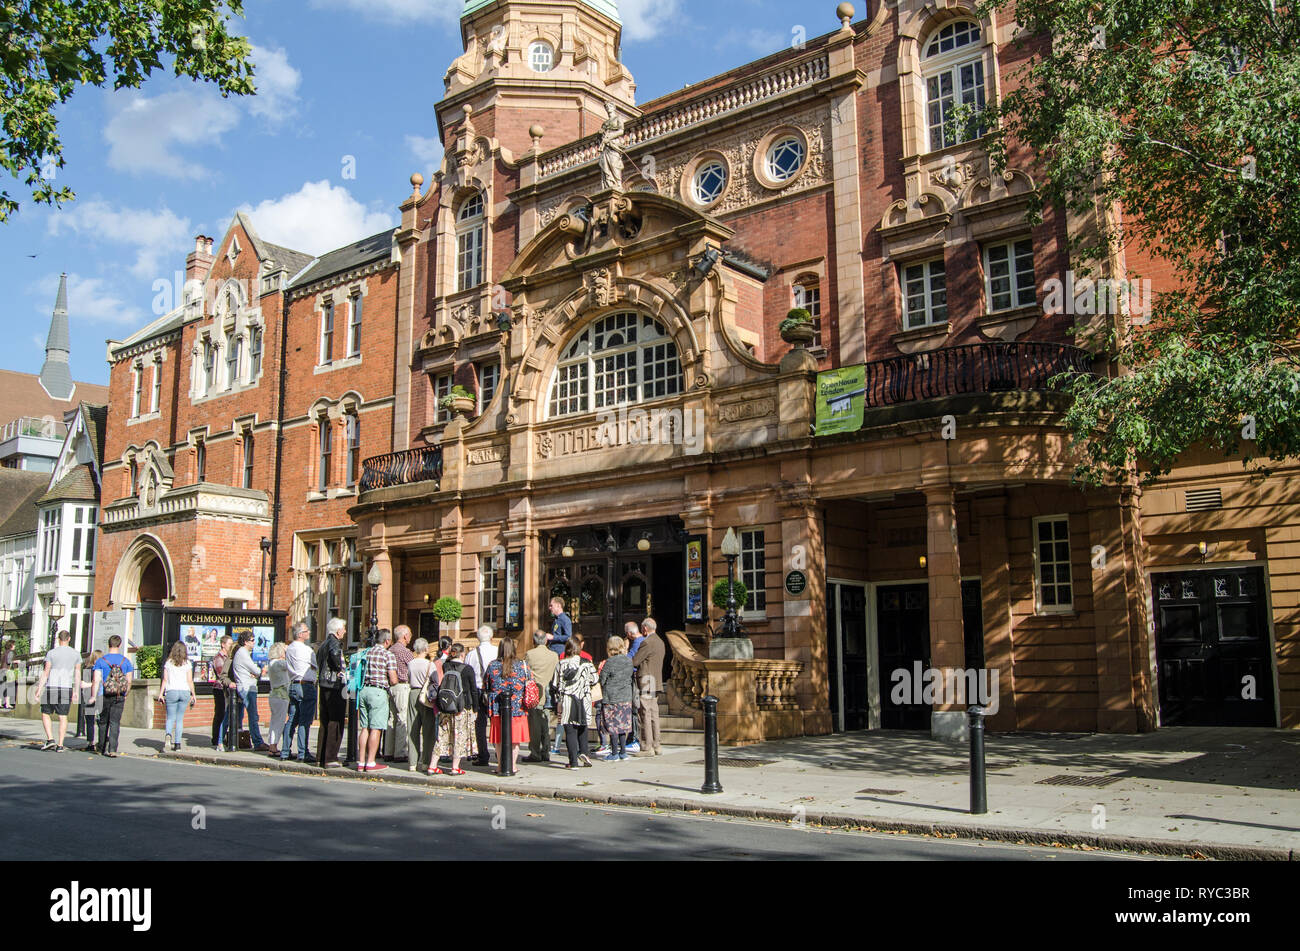 RICHMOND-upon-Thames, Royaume-Uni - 20 septembre 2015 : les visiteurs à écouter un guide à l'extérieur du théâtre historique à Richmond-Upon-Thames, à l'ouest de Londres. Conçu Banque D'Images